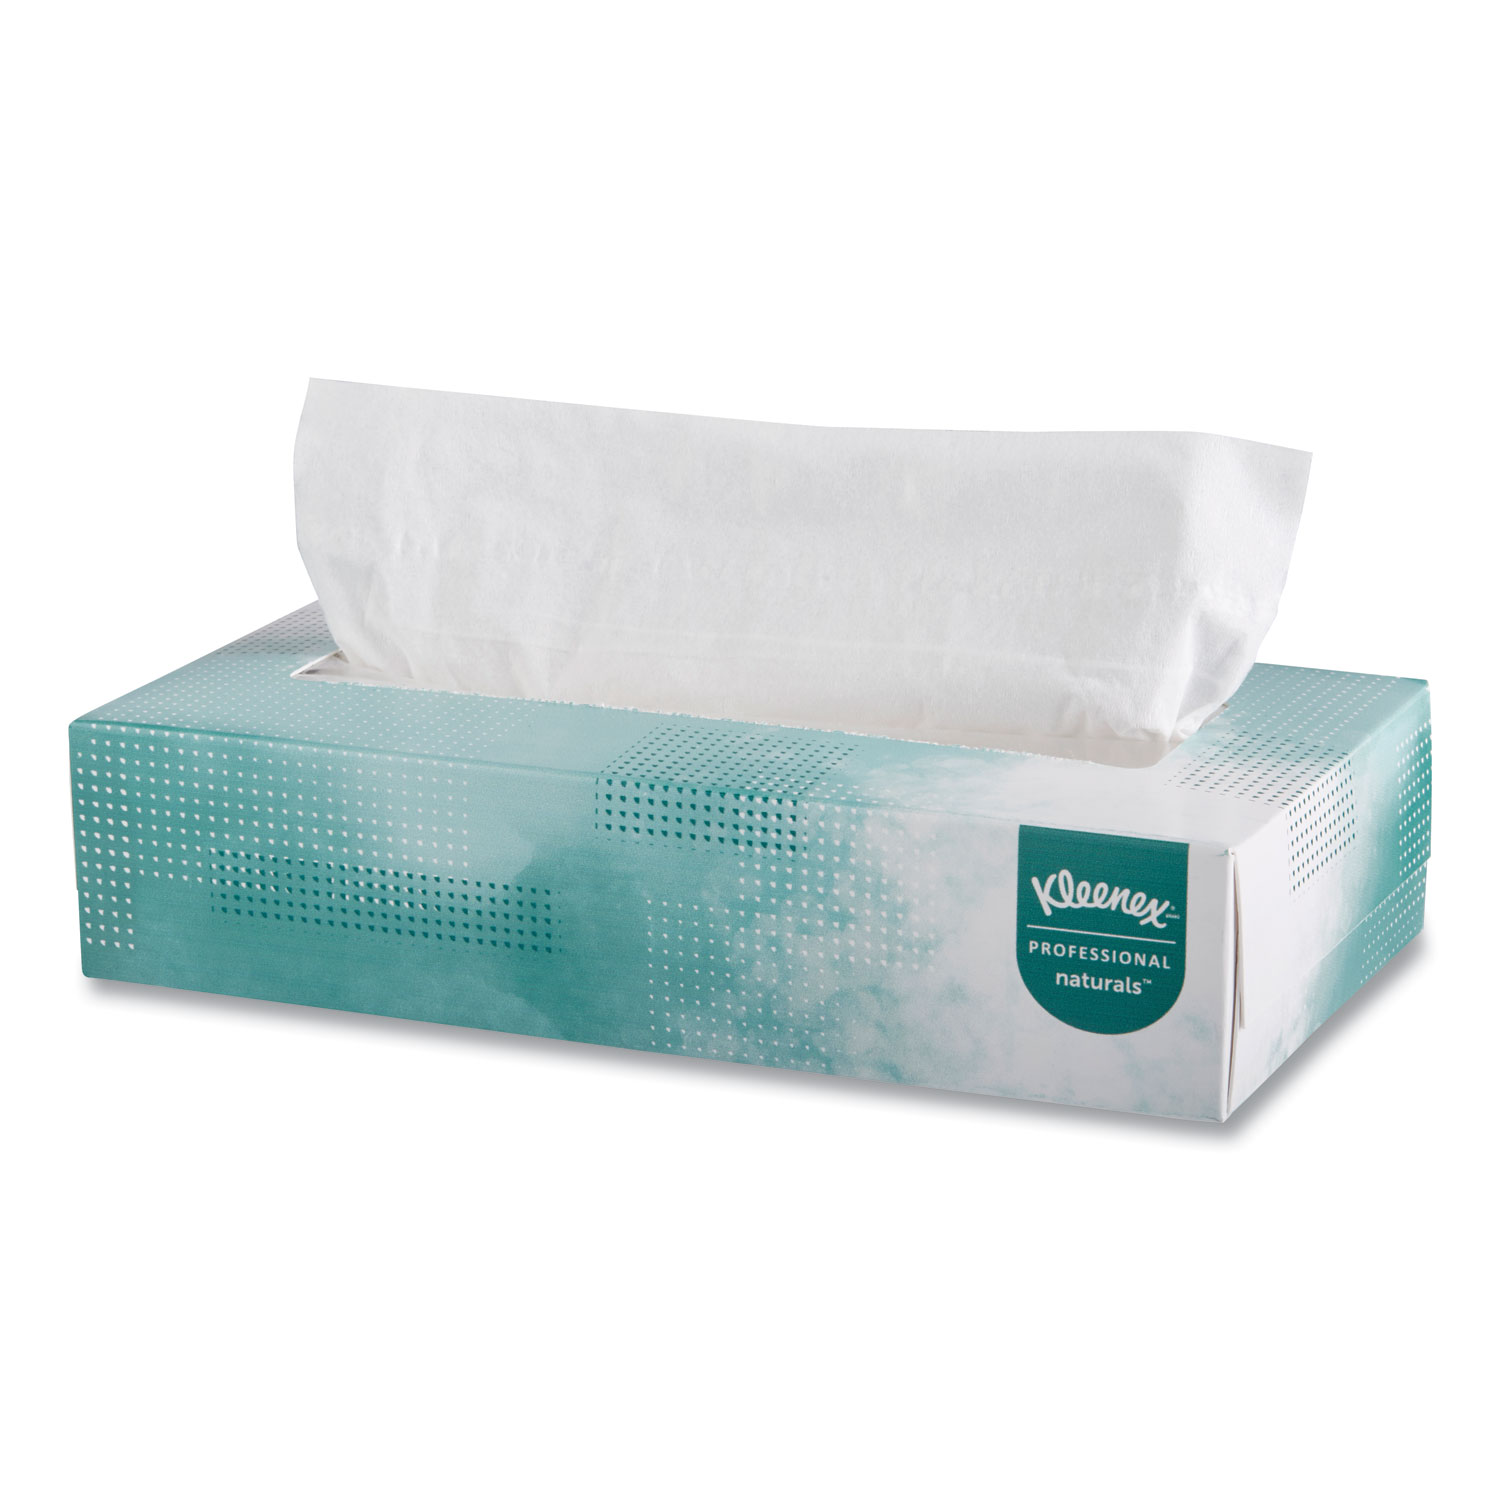 Naturals Facial Tissue, 2-Ply, White, 125 Sheets/Box